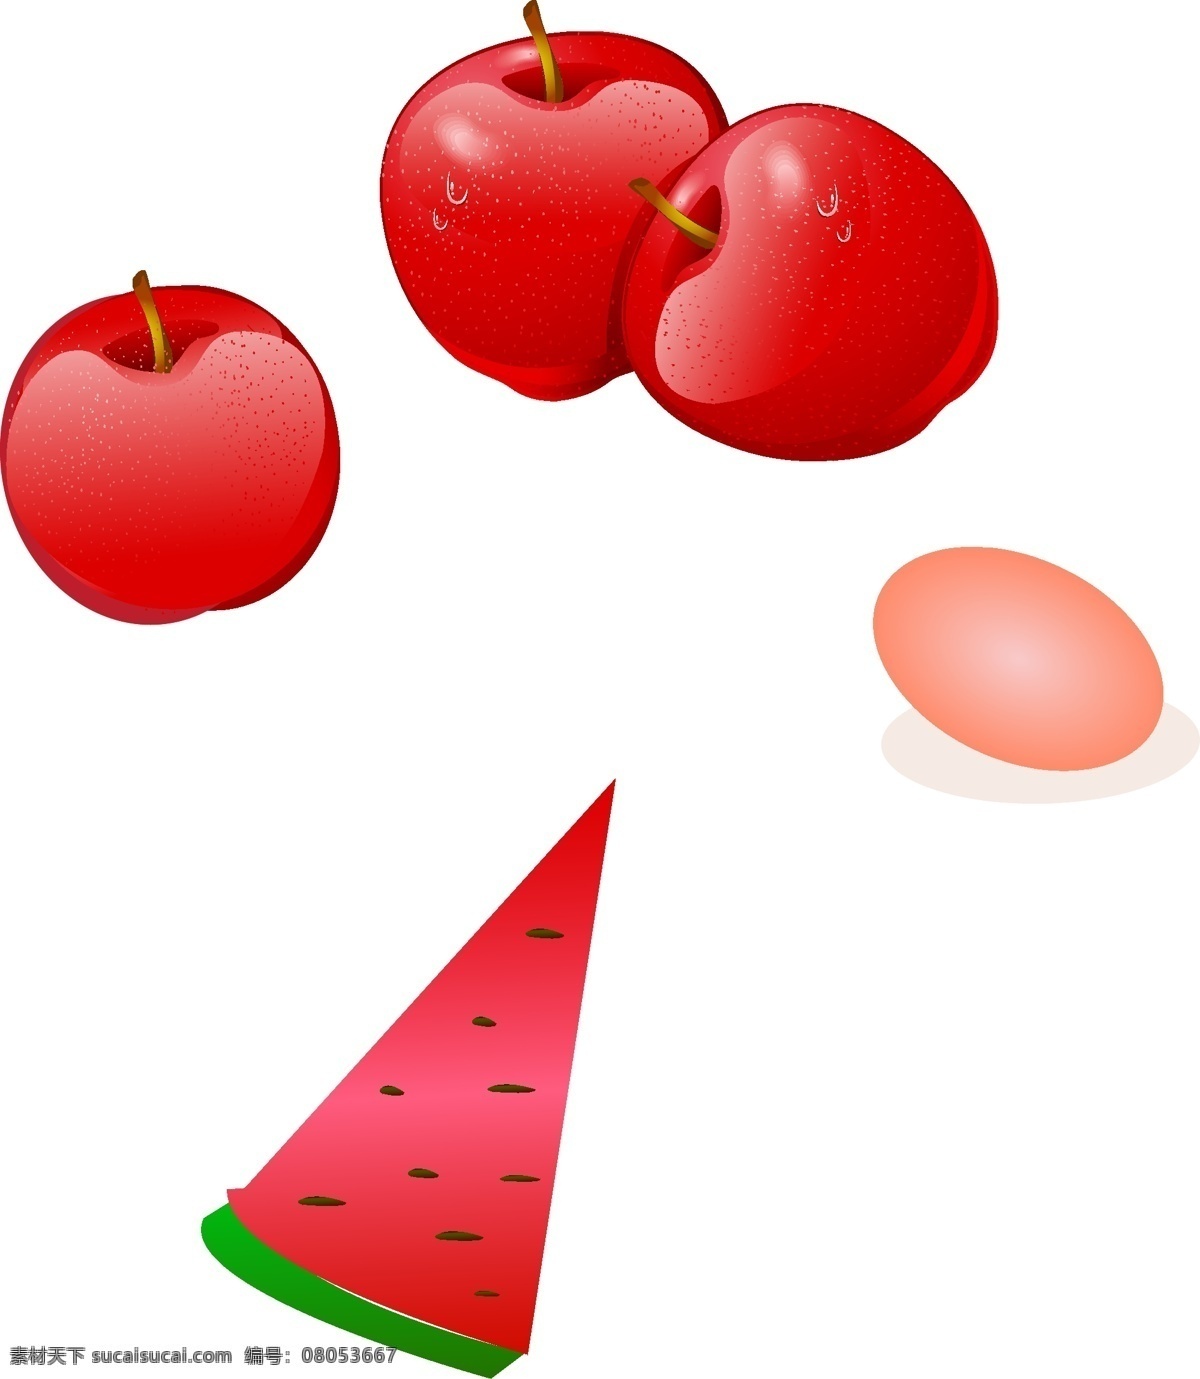 水果 鸡蛋 卡通 苹果 生物世界 水果矢量素材 西瓜 水果模板下载 矢量